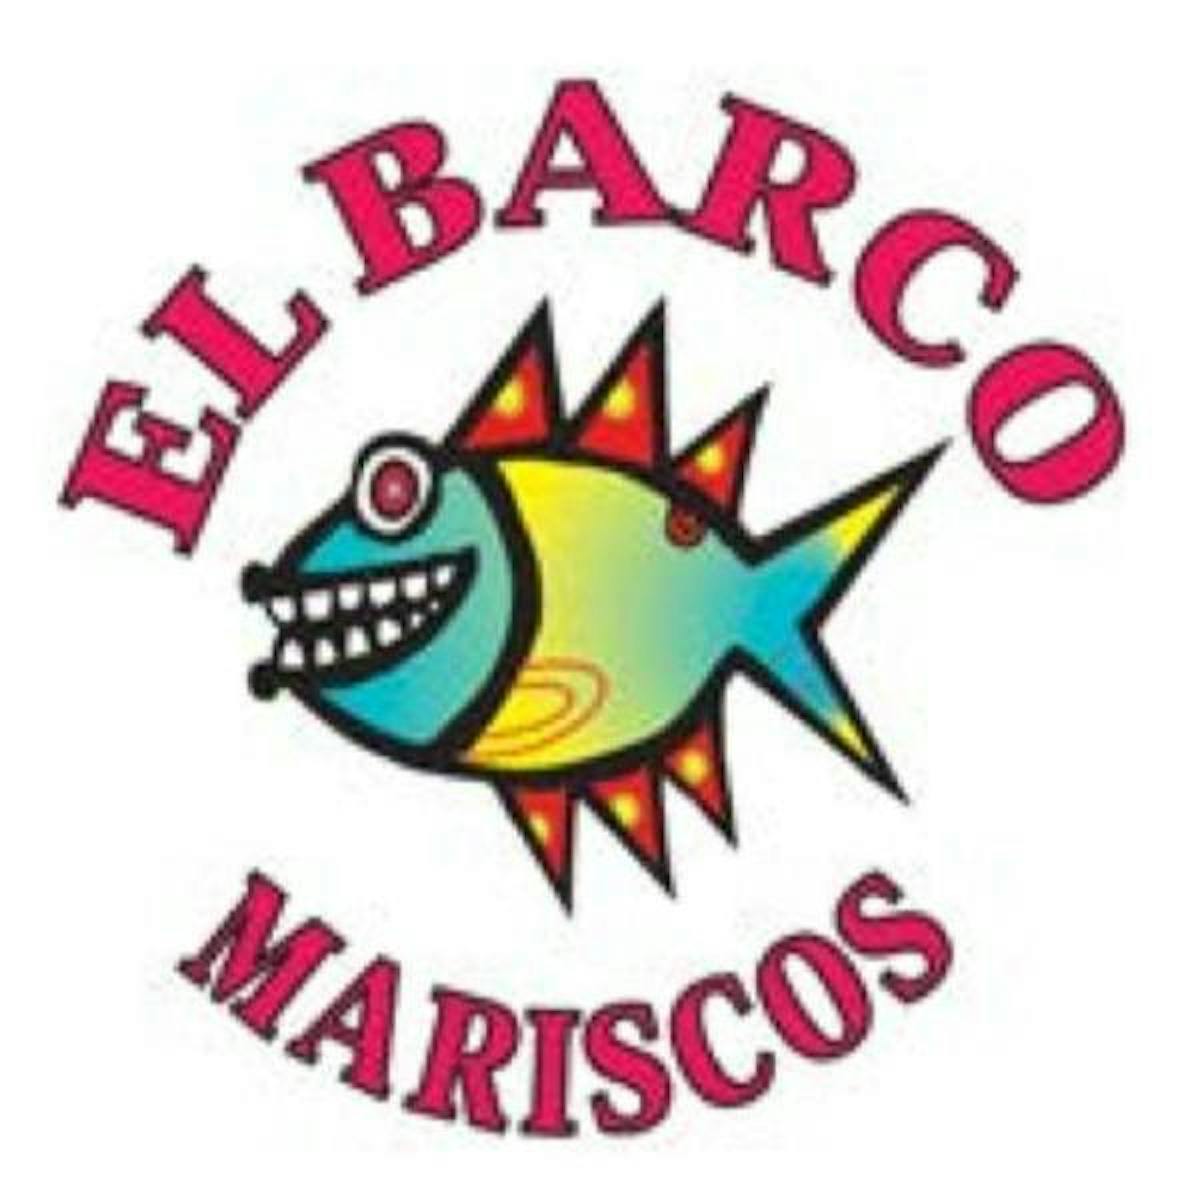 El Barco Mariscos logo